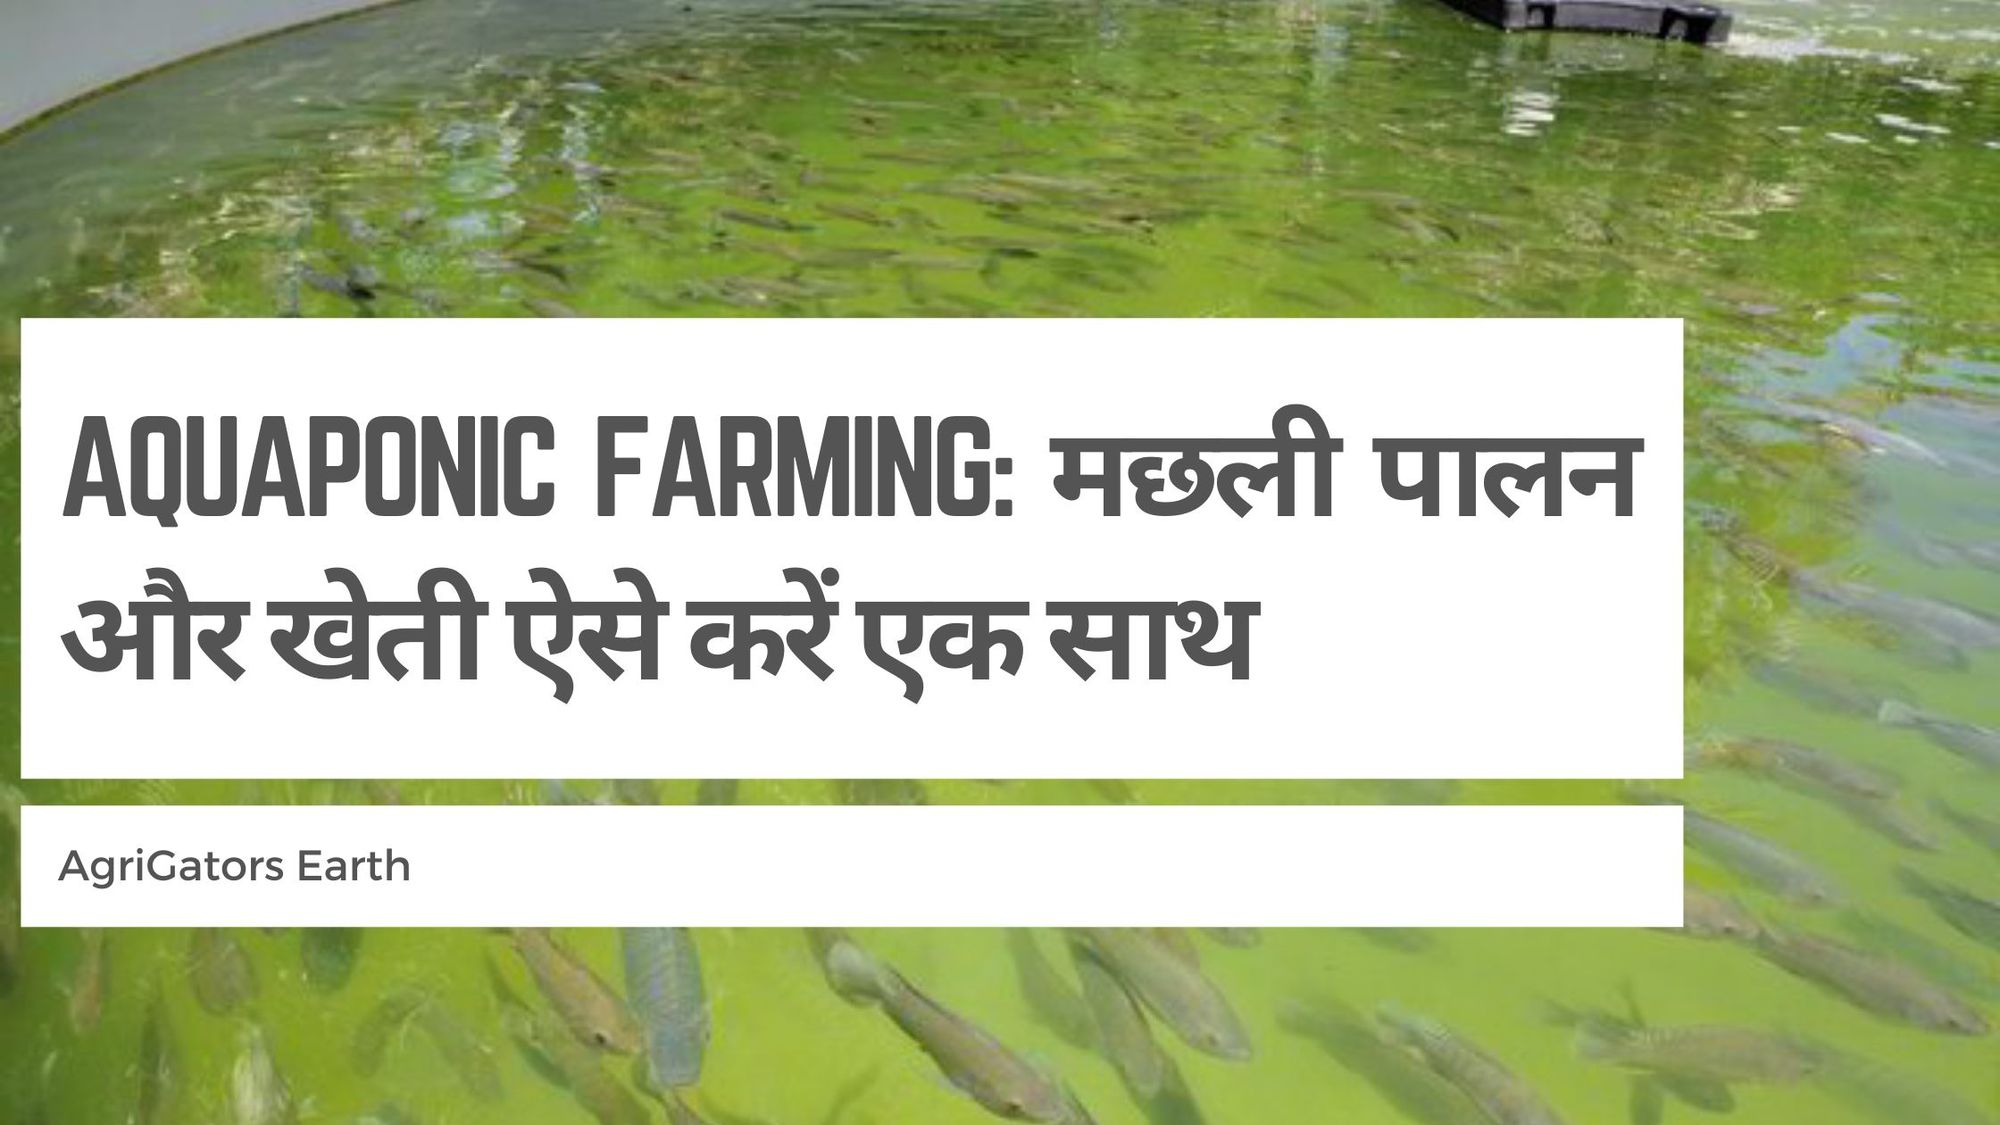 Aquaponic Farming: मछली पालन और खेती ऐसे करें एक साथ